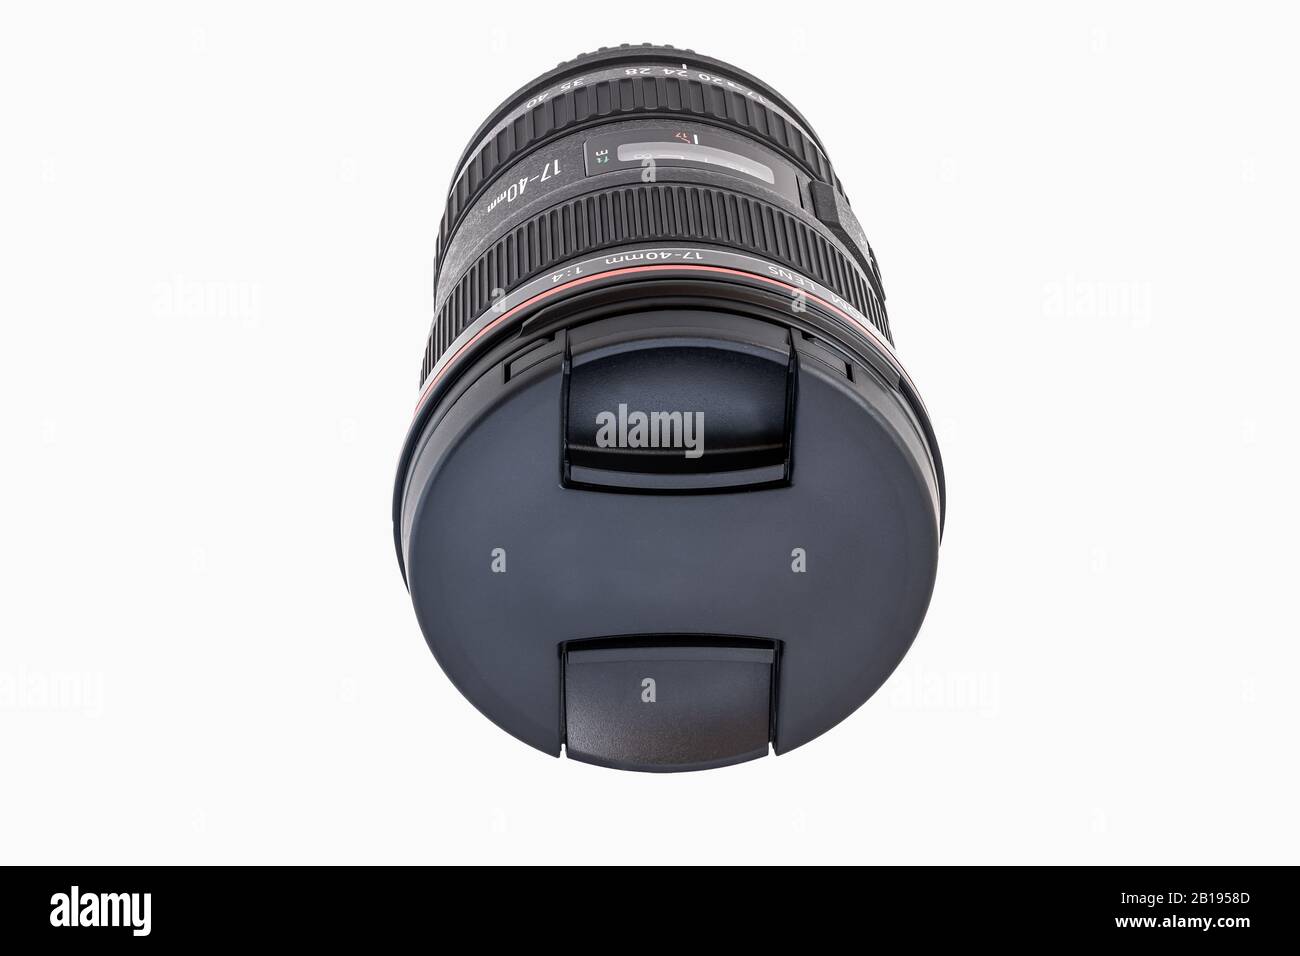 Objetivos Canon / A Canon EF f2,8 / Objetivo con zoom L de 24 a 70 mm  versión dos. Este objetivo es un objetivo con zoom de alta calidad  Fotografía de stock - Alamy